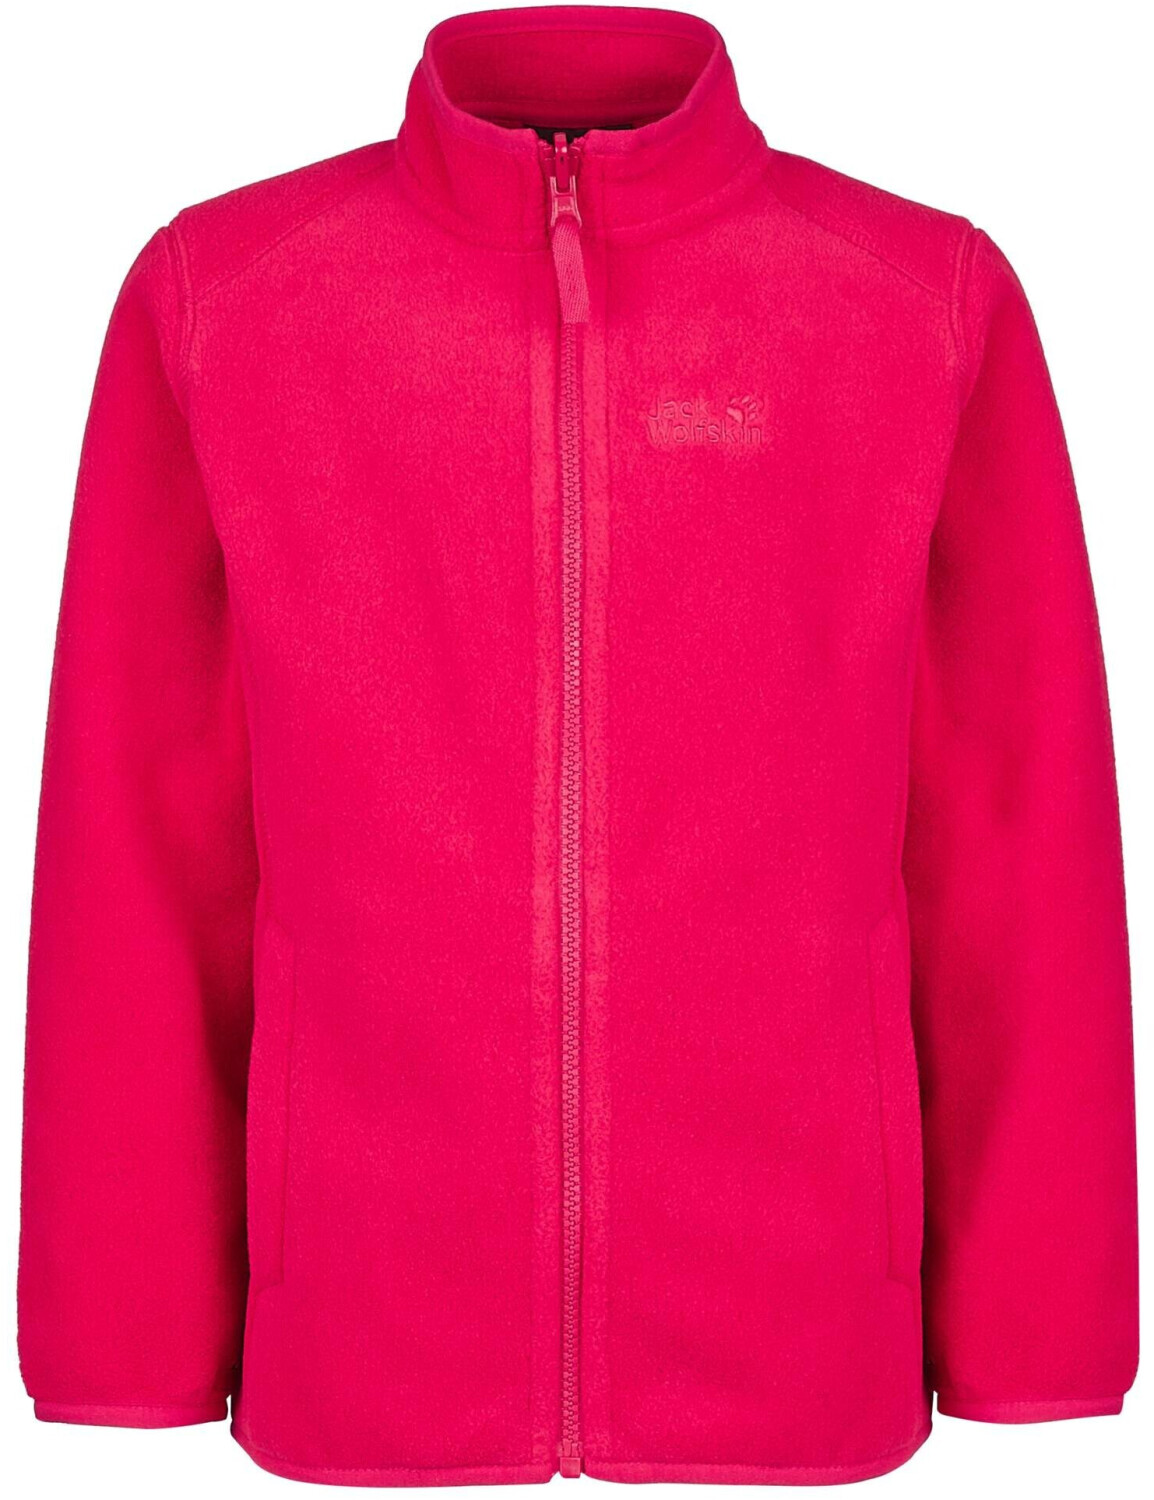 Jack Wolfskin Iceland 3in1 Jacket G (1605265) pink dahlia ab 54,98 € |  Preisvergleich bei